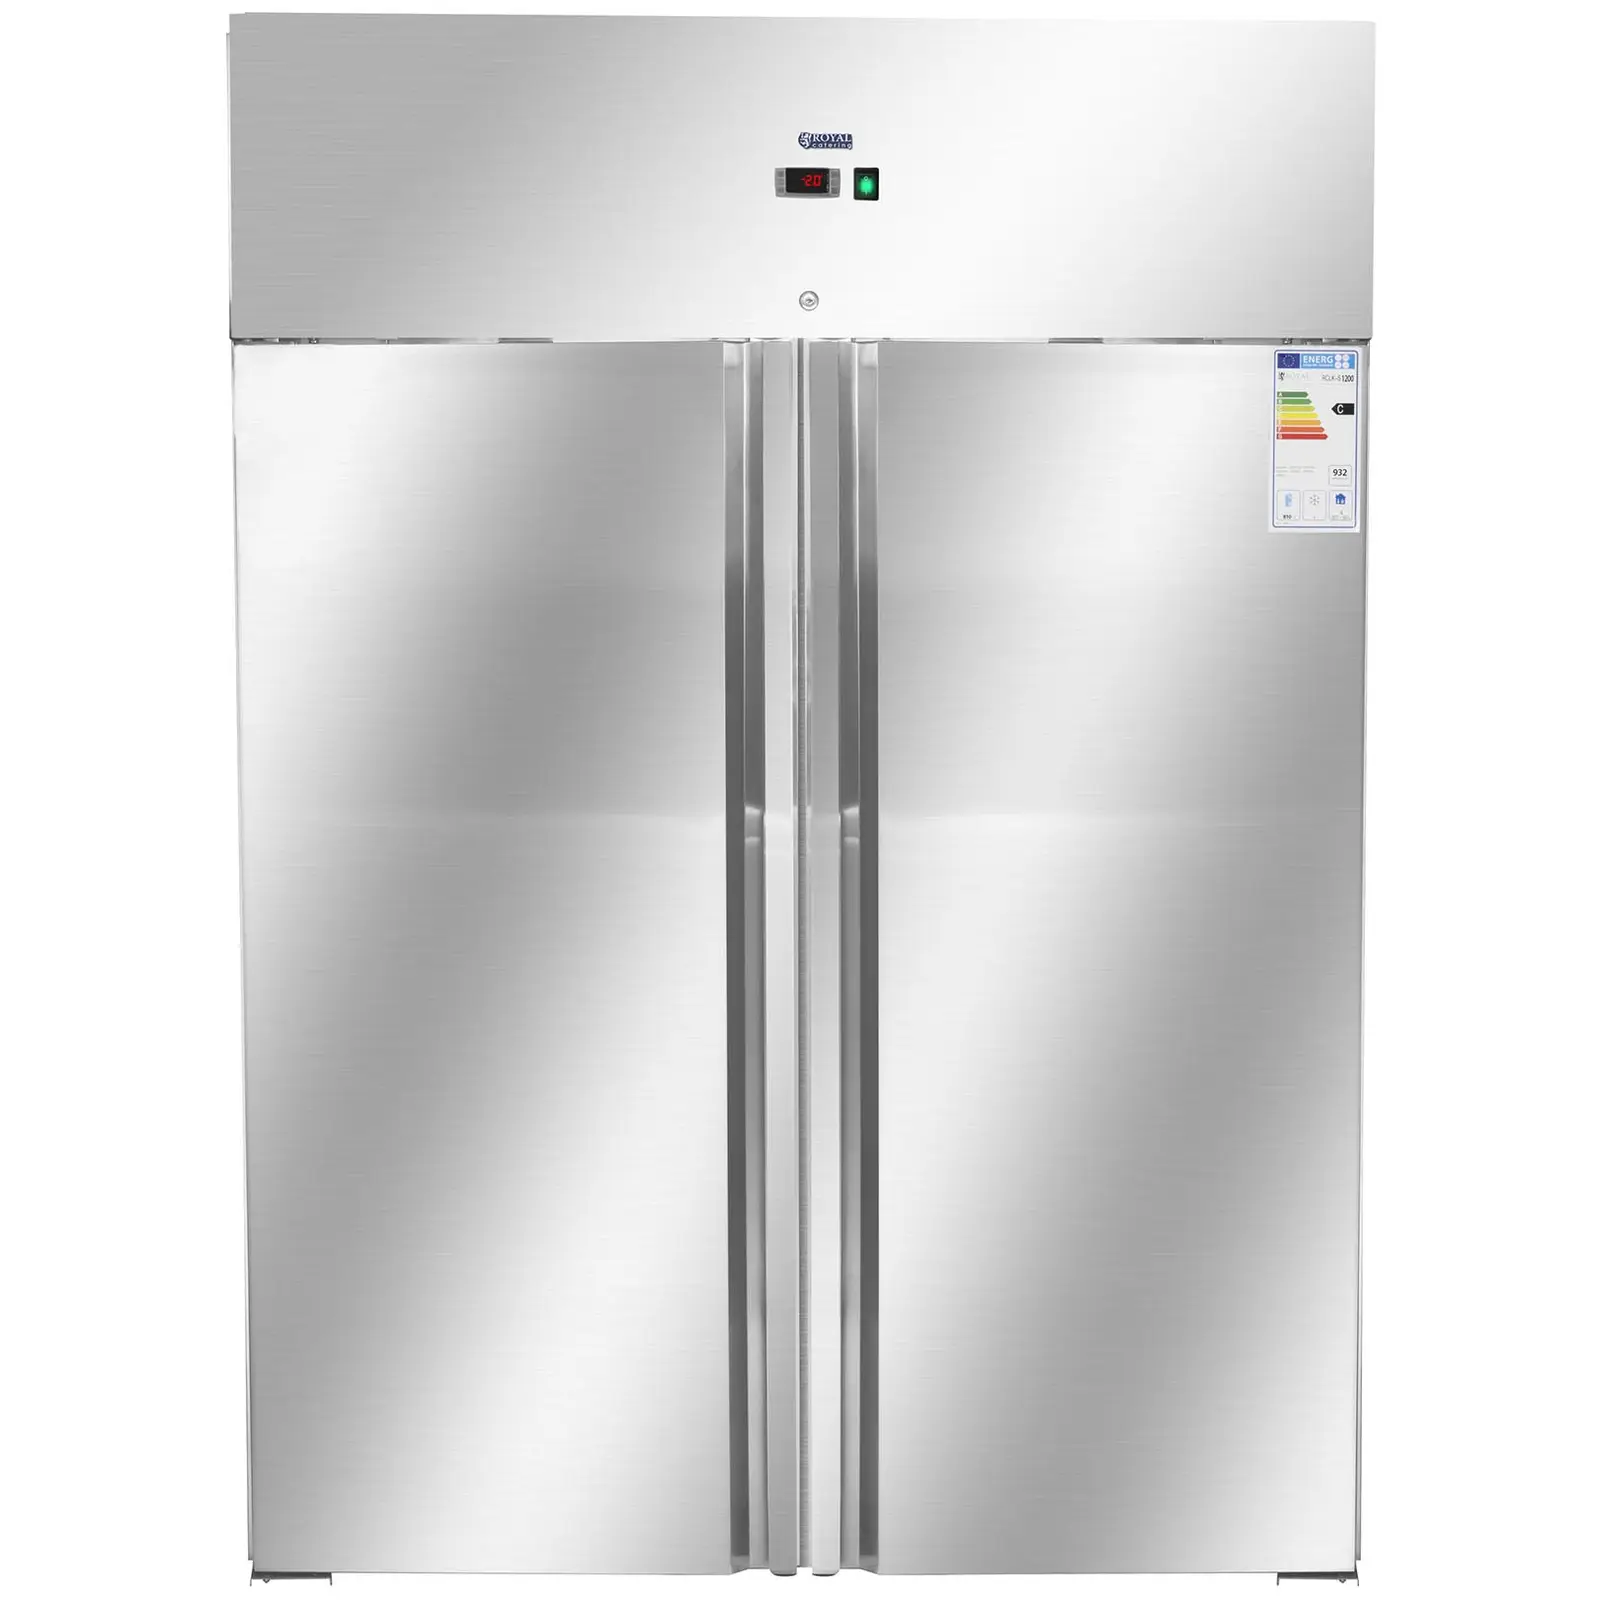 Gastro chladnička se dvěma dveřmi - 1 168 l